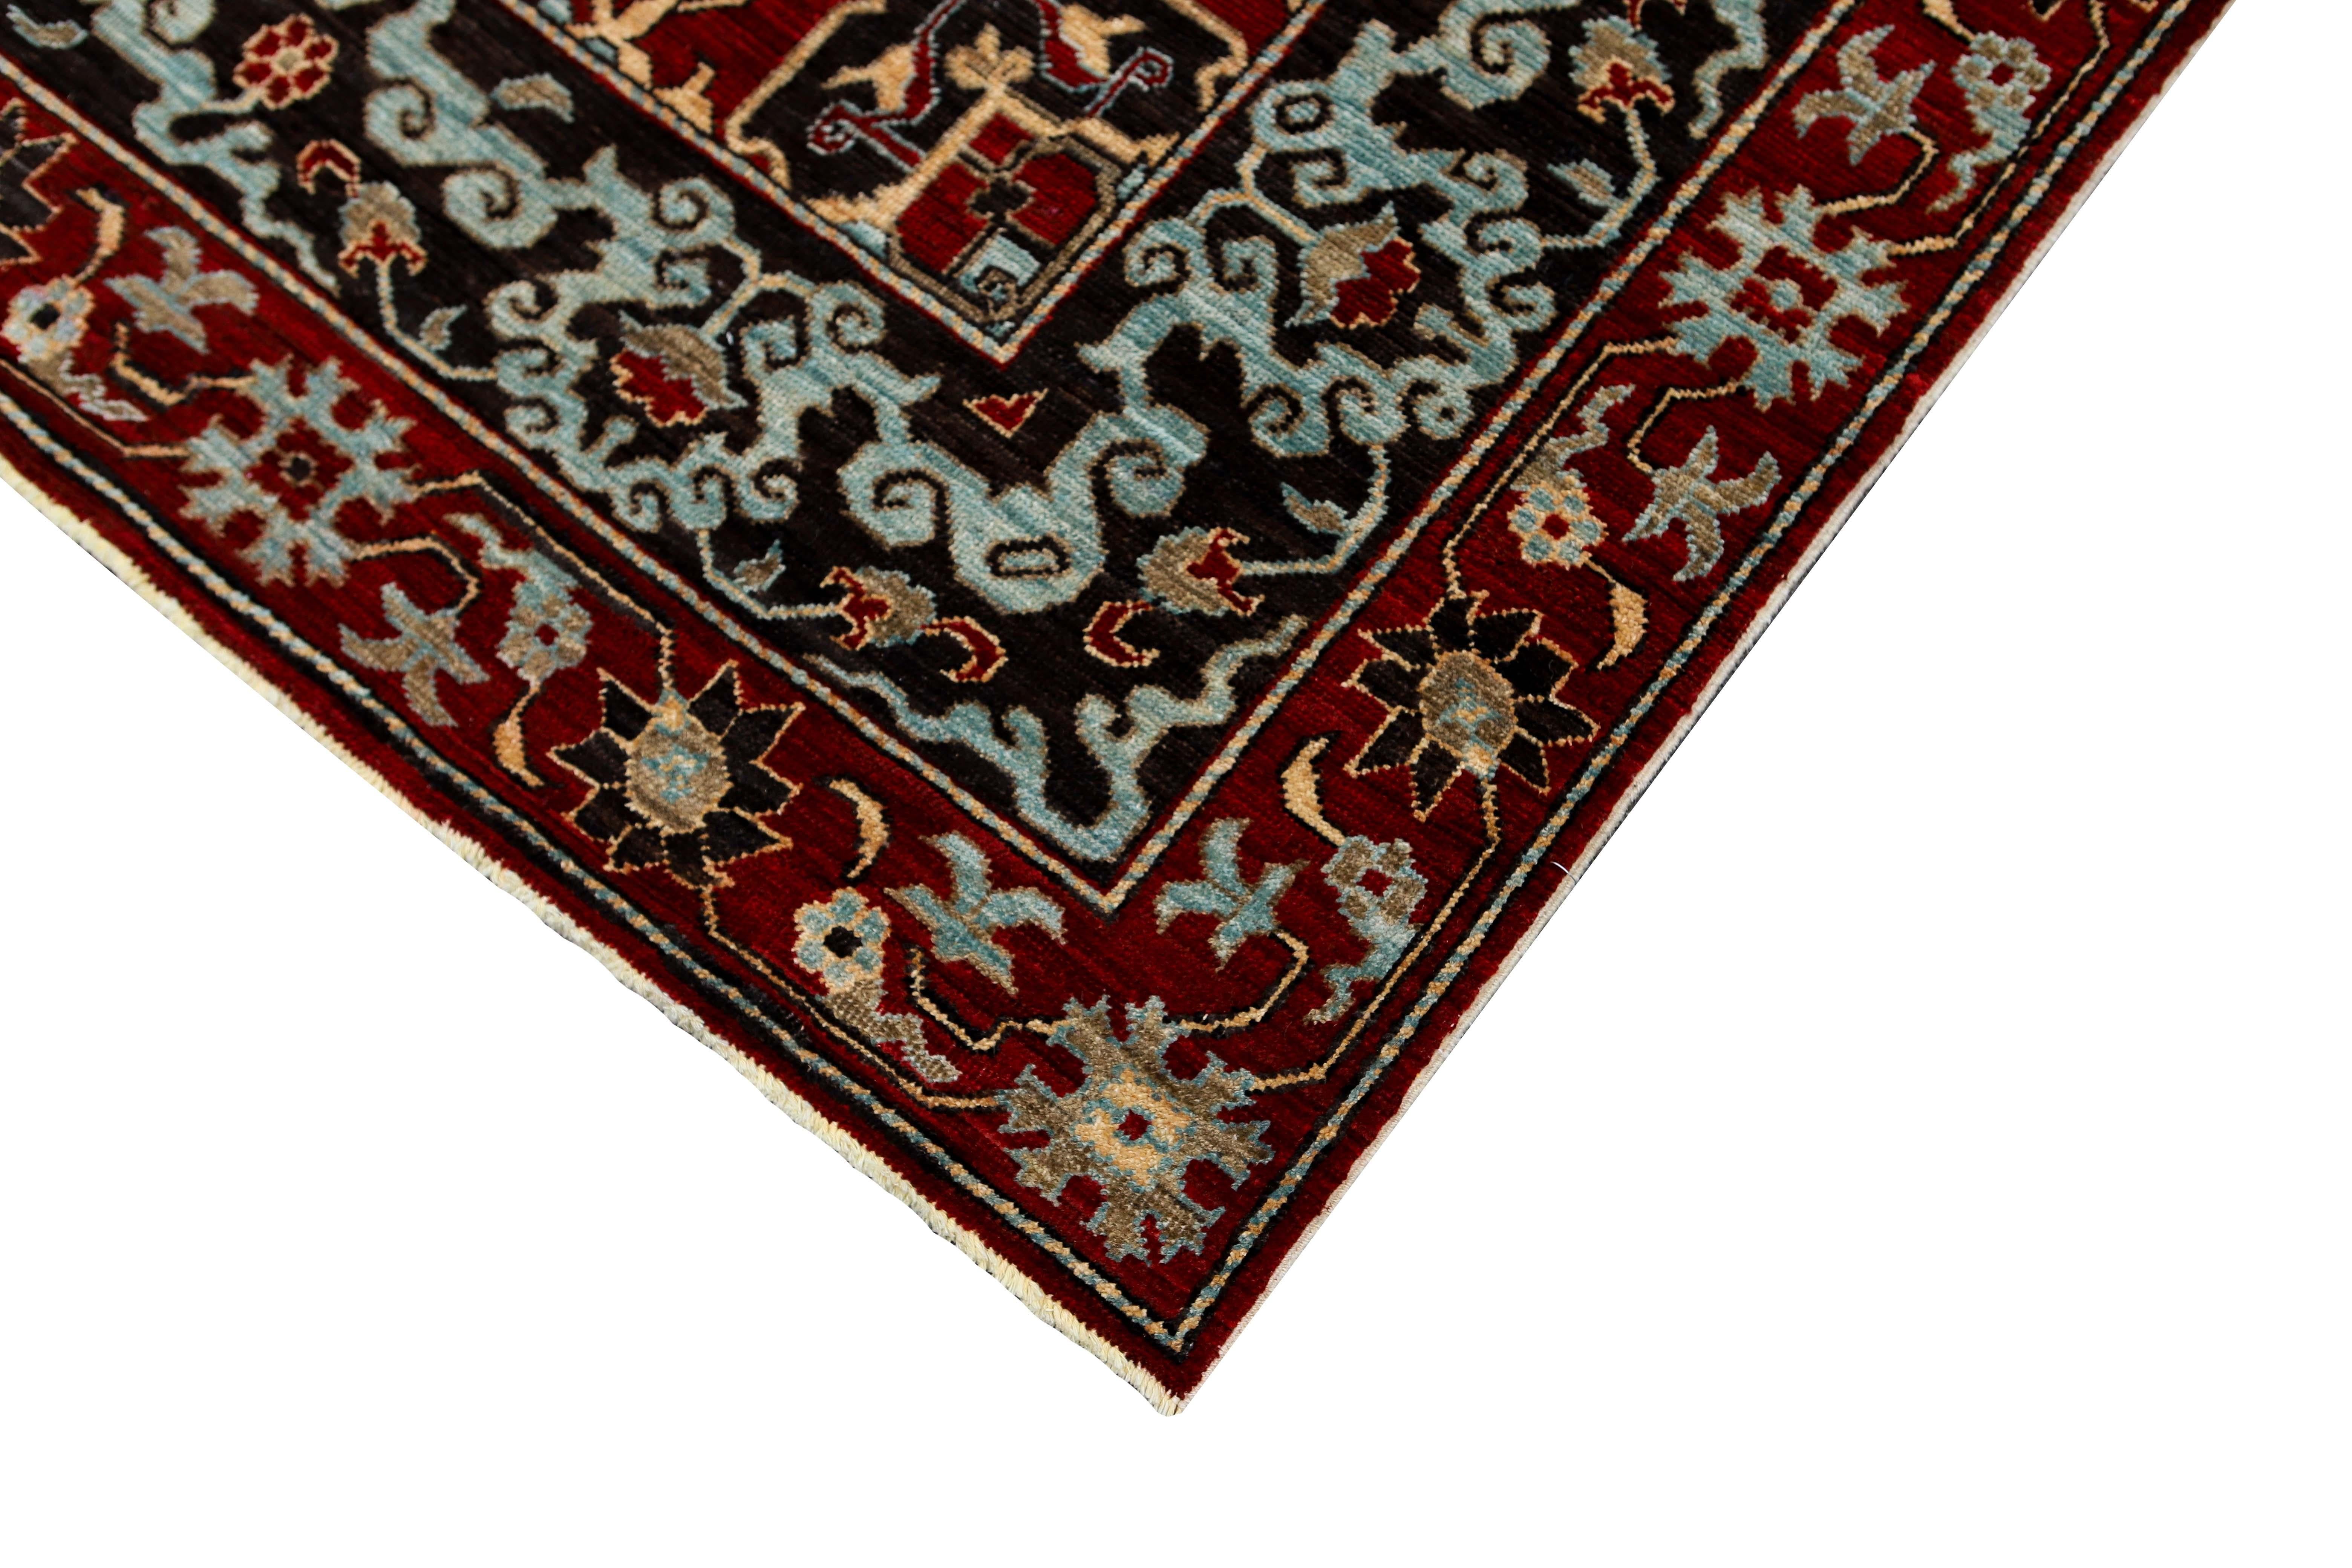 Tapis traditionnel afghan rouge 10 x 14.
Noué à la main avec de la laine filée à la main, tissé en Afghanistan. Ce tapis magnifiquement conçu ne manquera pas de se faire remarquer dans n'importe quelle pièce.
Fabriqué en 100% laine.
Teinté dans